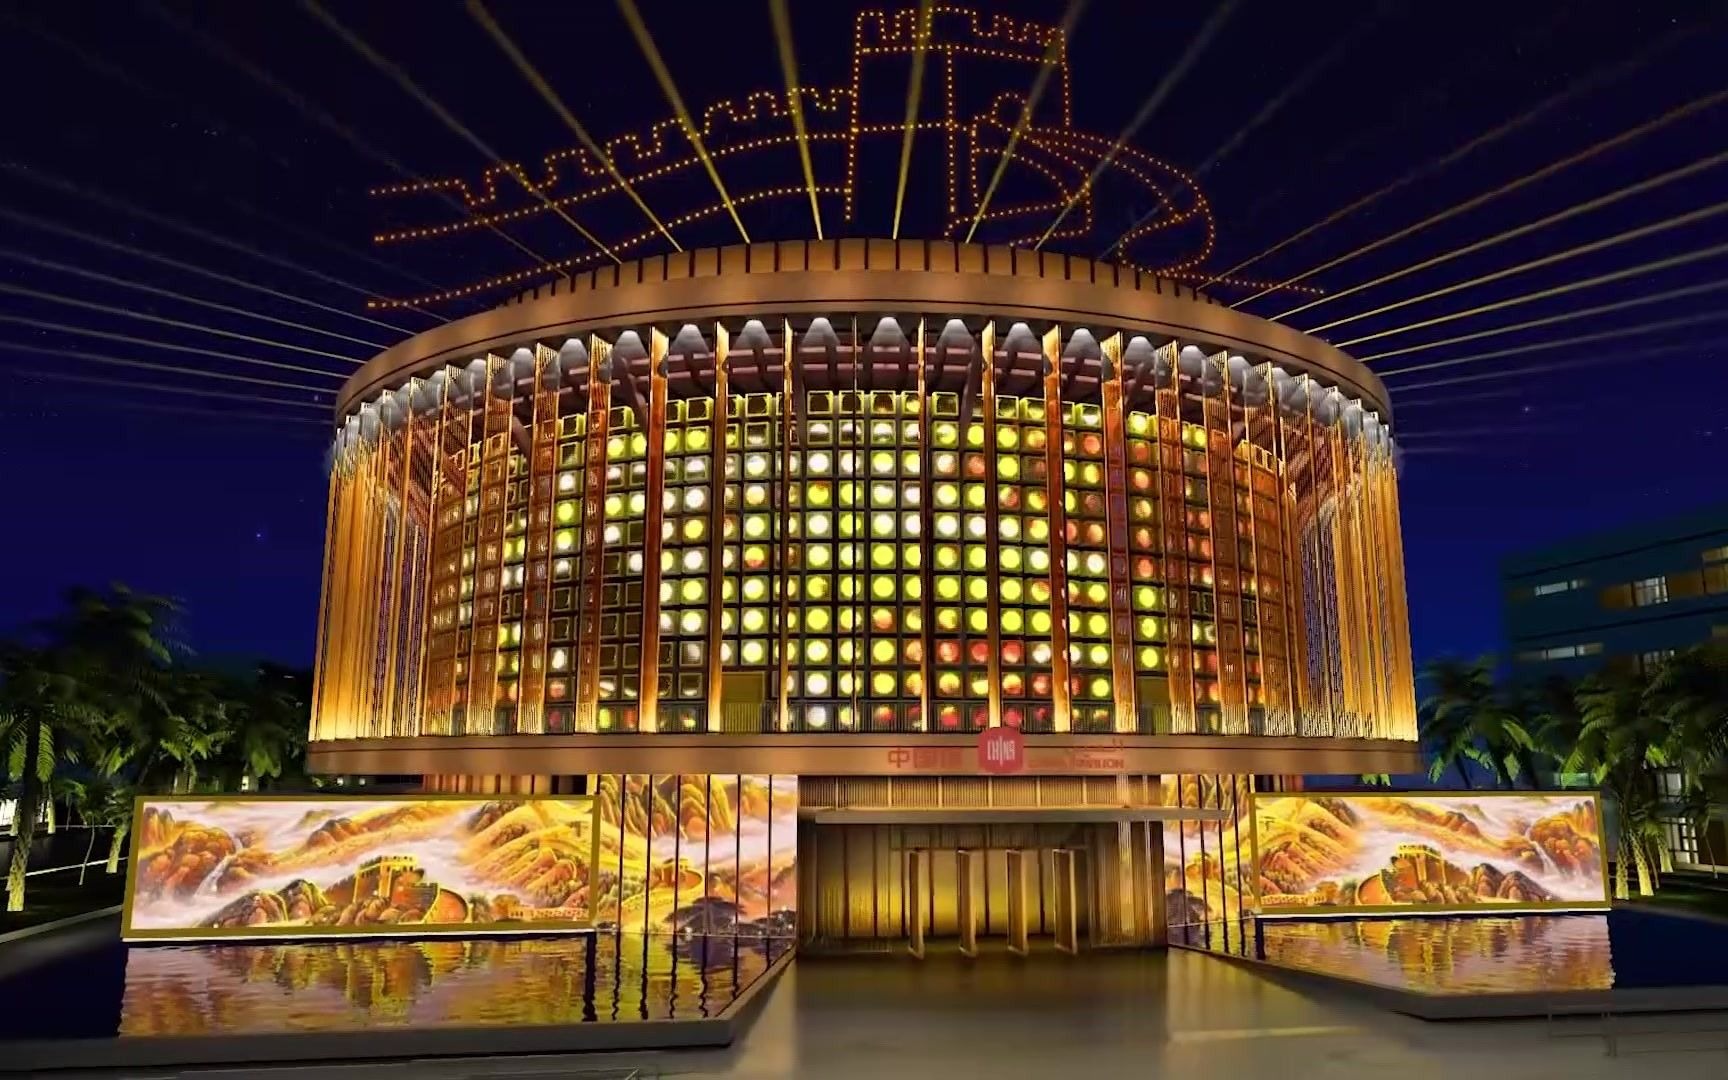 迪拜世博会中国馆官方宣传片发布华夏之光闪耀迪拜